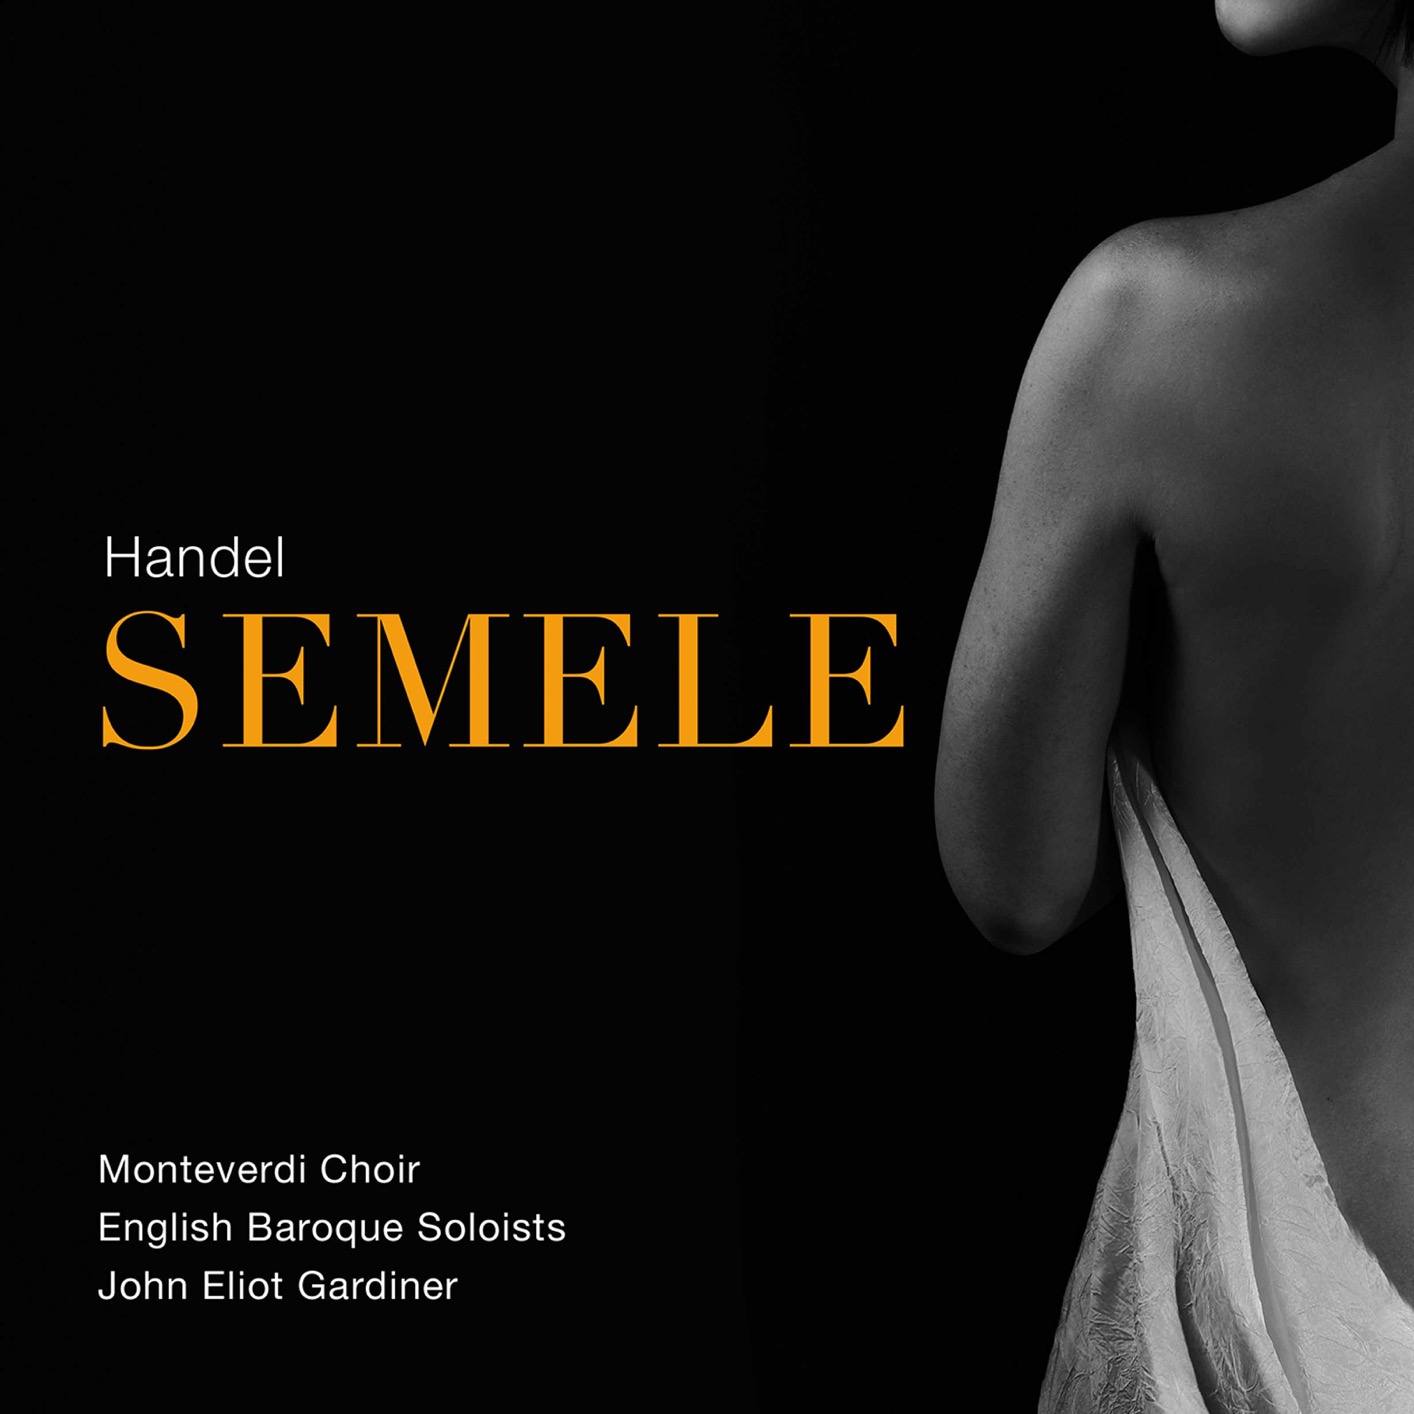 Monteverdi Choir, English Baroque Soloists, John Eliot Gardiner - Handel Semele, HWV 58 (Live) (2020) [FLAC 24bit/96kHz]